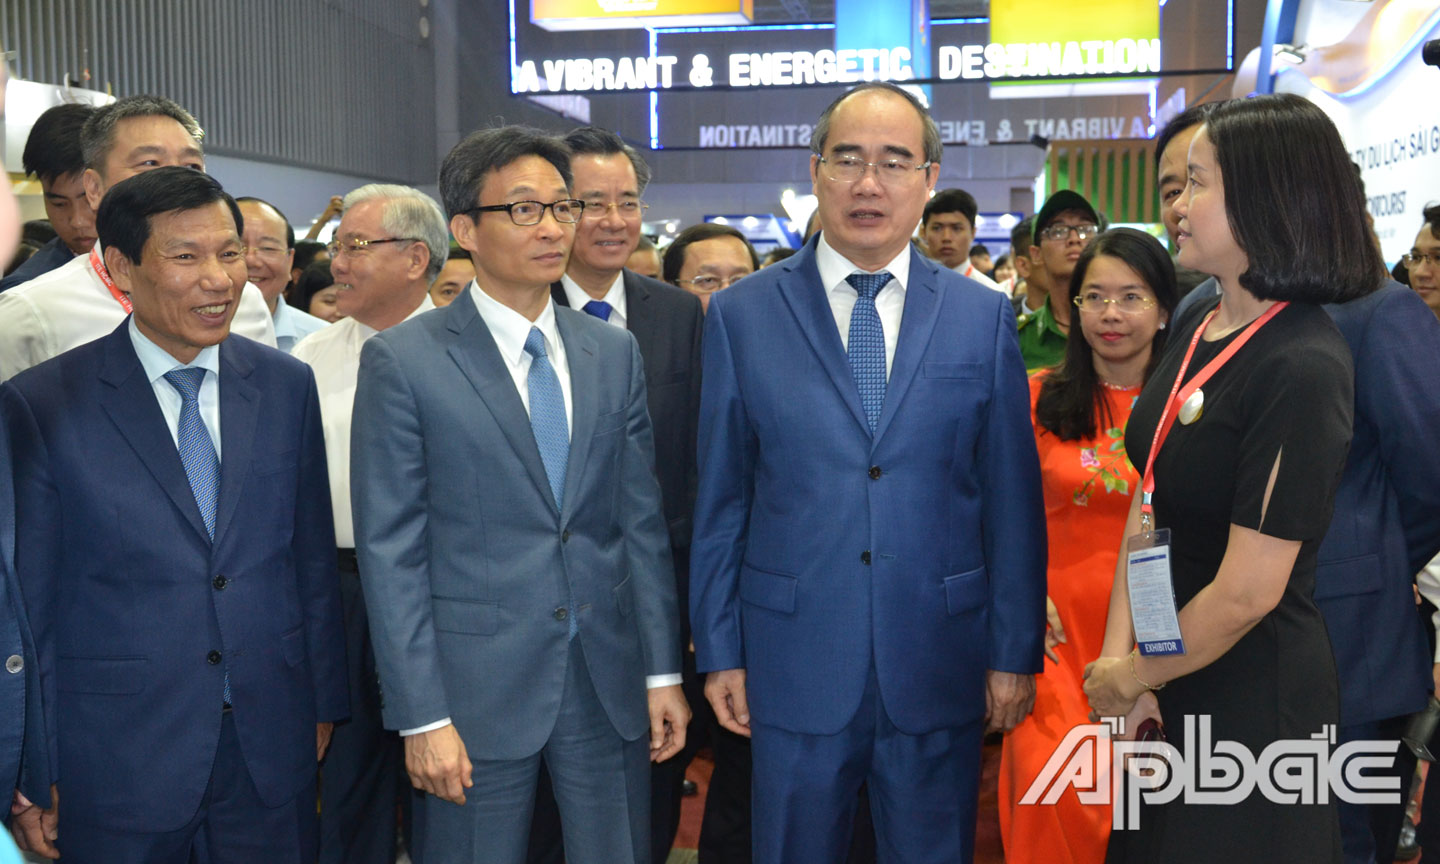 Phó Thủ tướng Chính phủ Vũ Đức Đam cùng đồng chí Nguyễn Thiện Nhân thăm các doanh nghiệp du lịch tại Hội chợ Du lịch quốc tế TP. Hồ Chí Minh 2019.